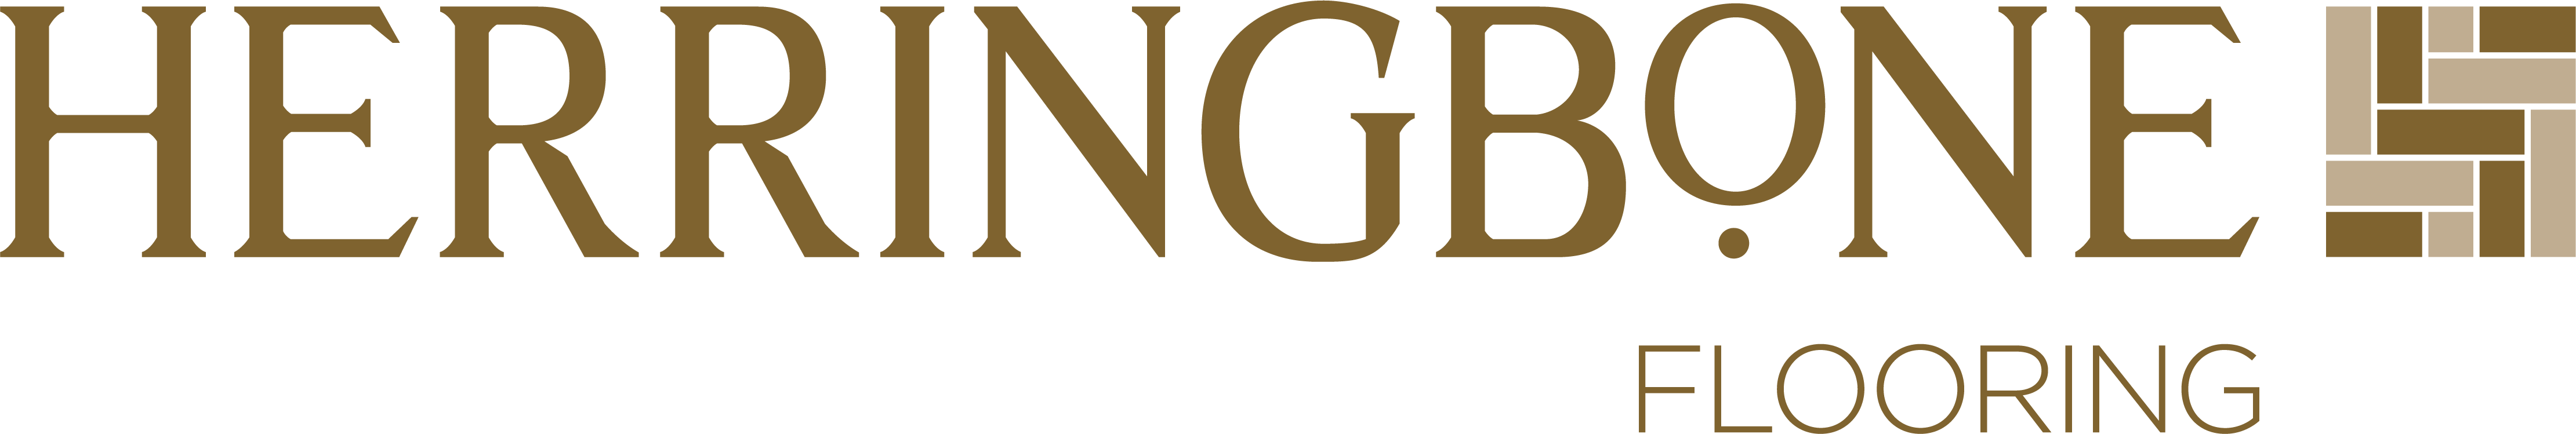 herringbone-logo